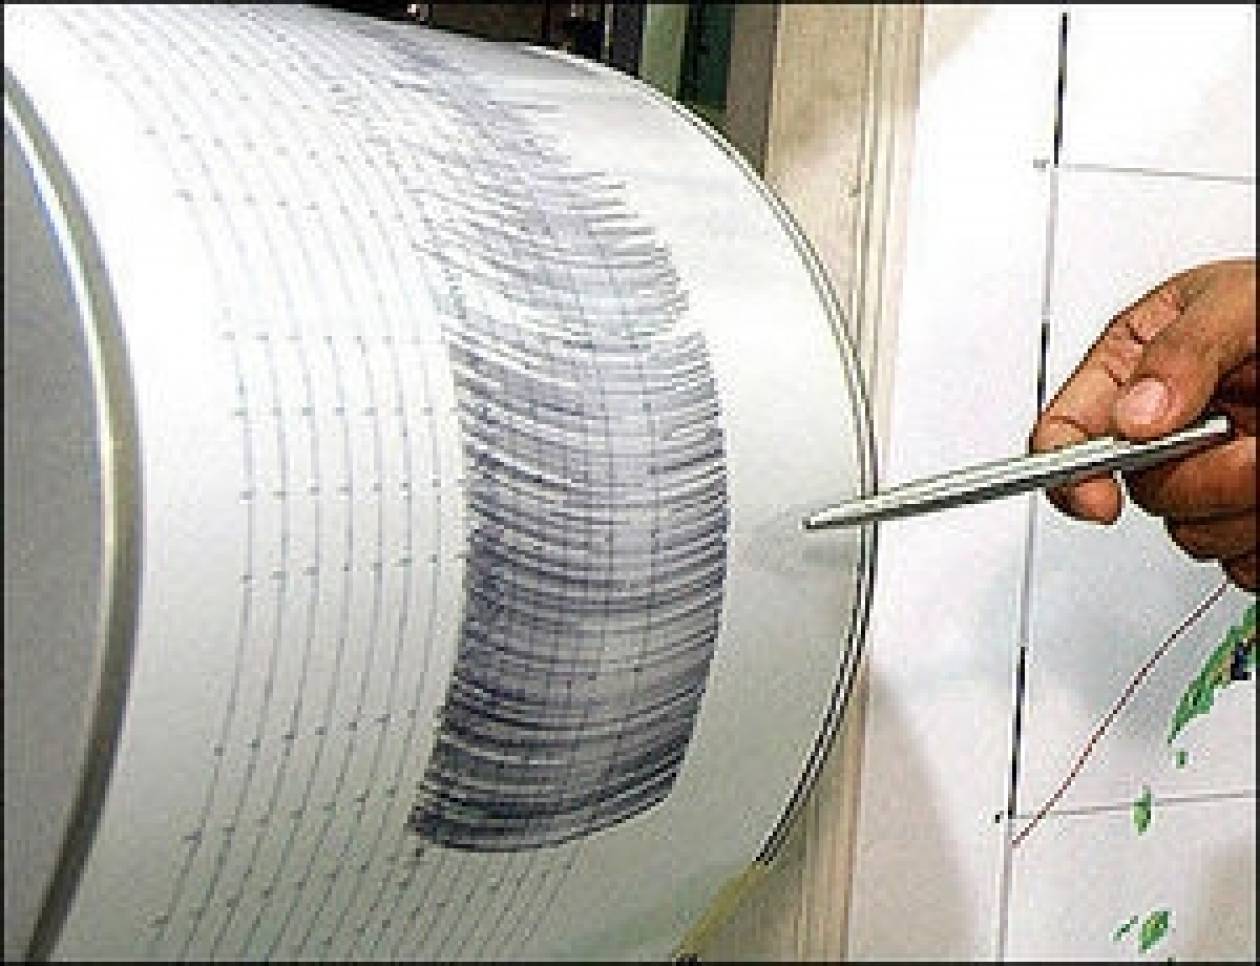 Σεισμός 4,4 Ρίχτερ στην Αμφίκλεια - Αισθητός και στην Αττική